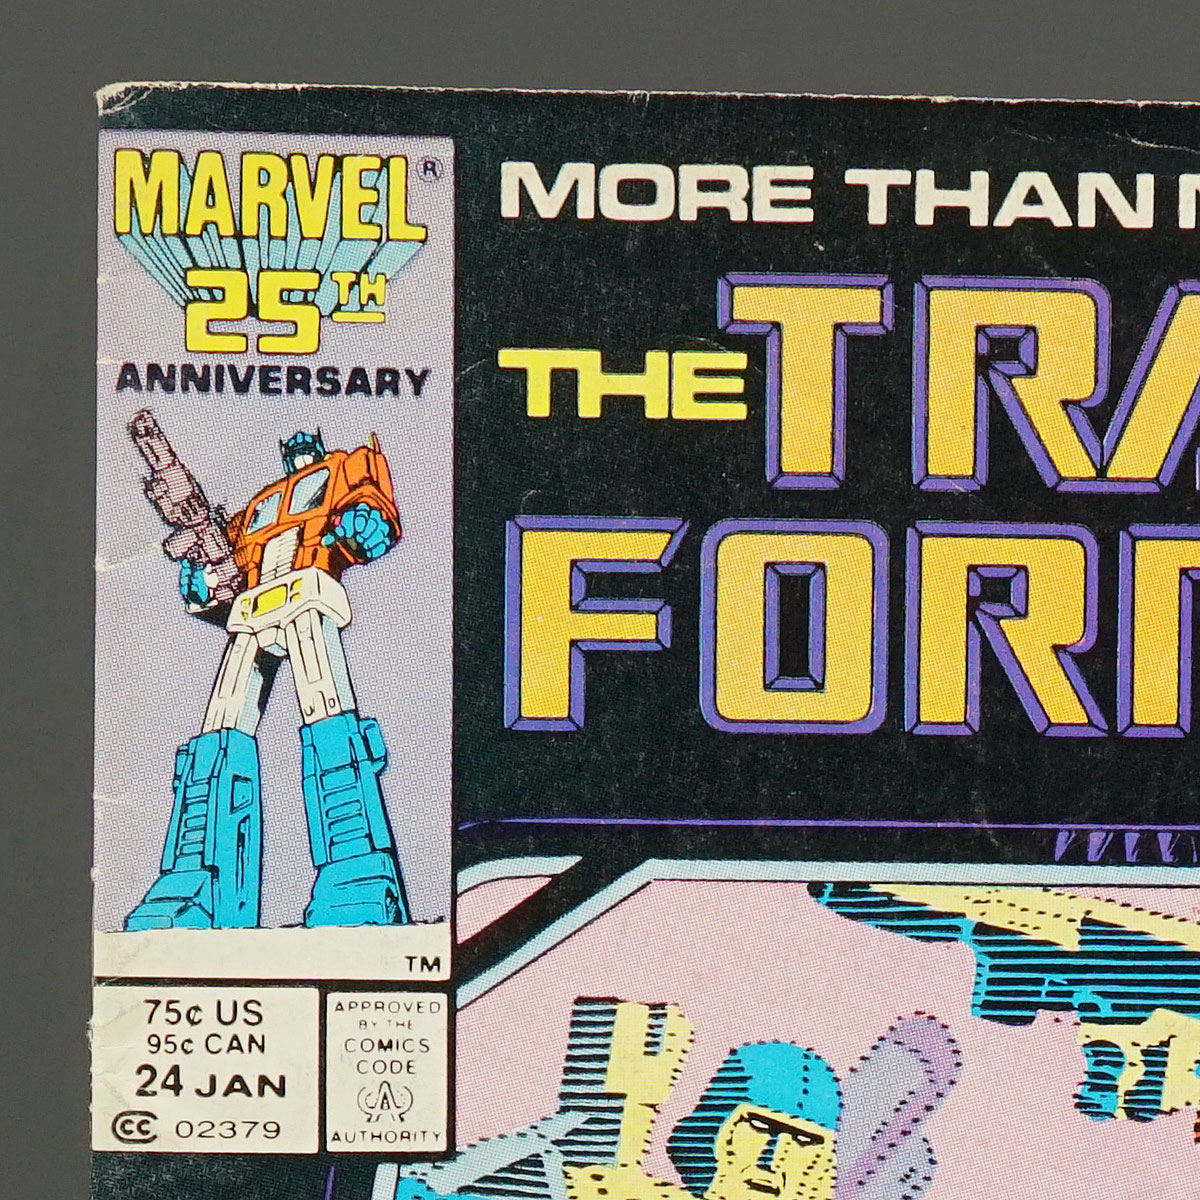 THE TRANSFORMERS #24 Marvel Comics 1987 (CA) Trimpe (W) Budiansky (A) Perlin 240210D